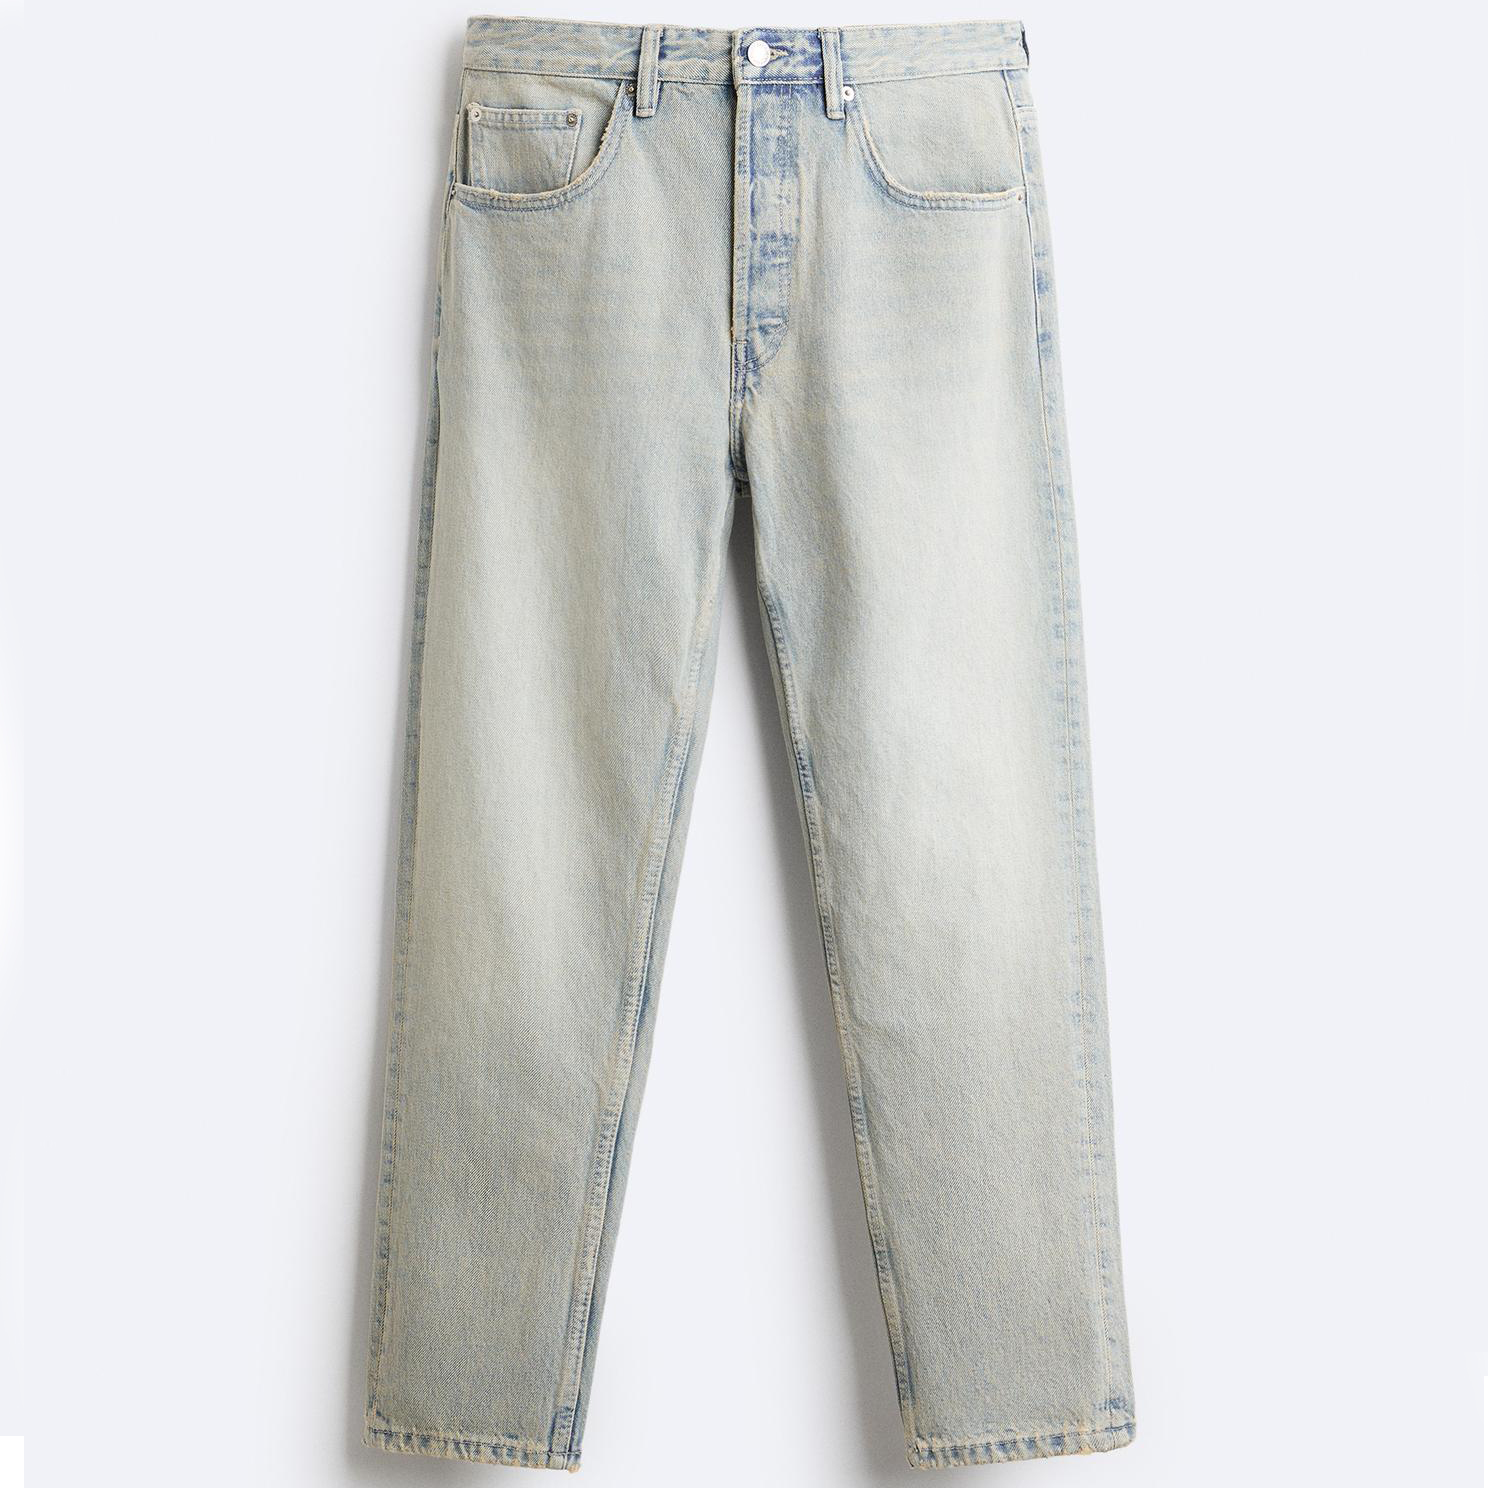 Джинсы Zara Slim Cropped-fit, серо-голубой джинсы узкие 78 застежка на молнию на щиколотке 38 fr 44 rus розовый